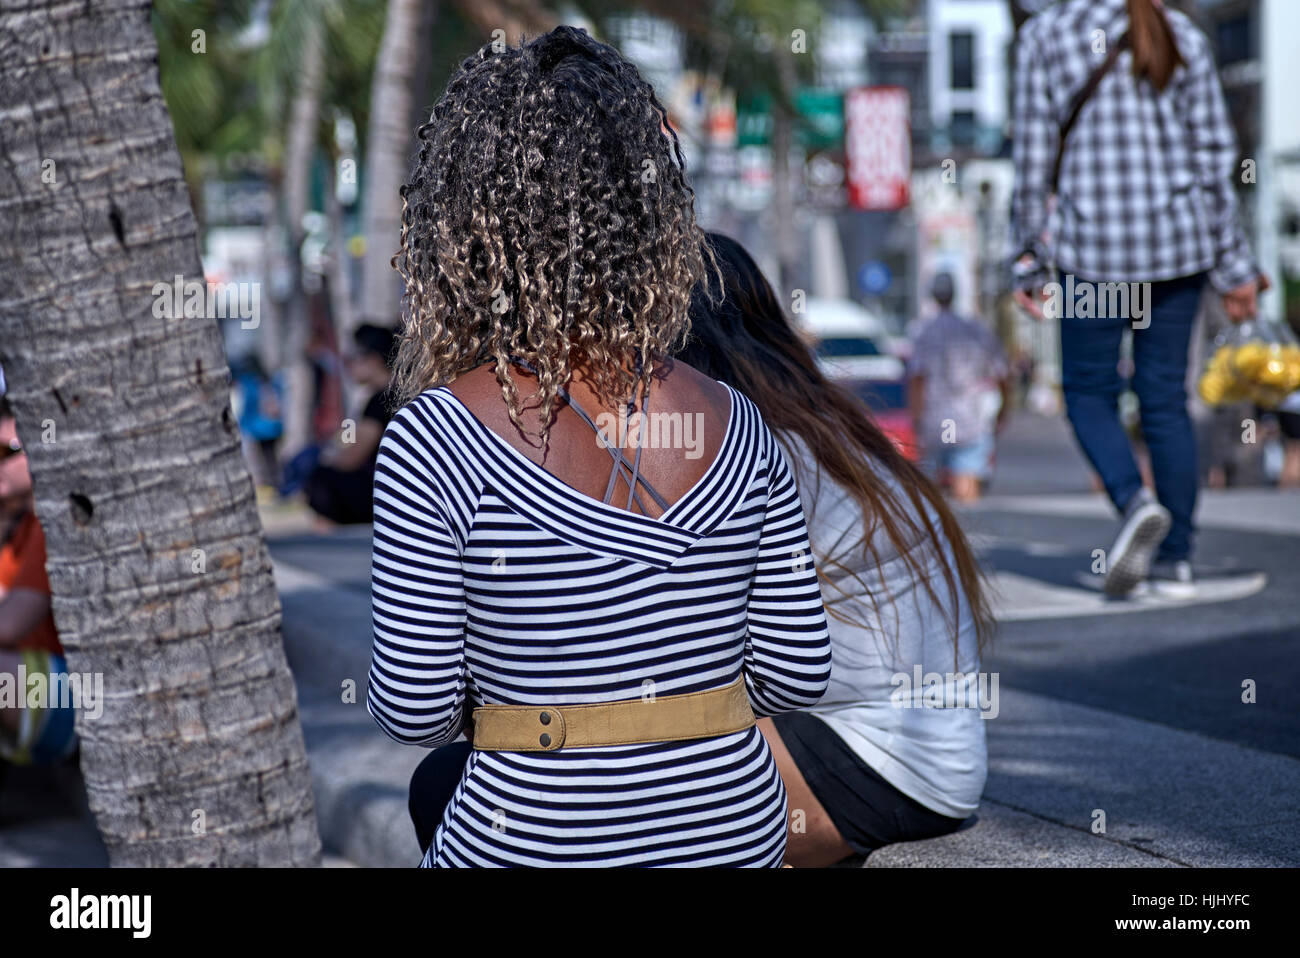 Cheveux. Femme avec une coiffure frizzy Afro Caribbean. Banque D'Images